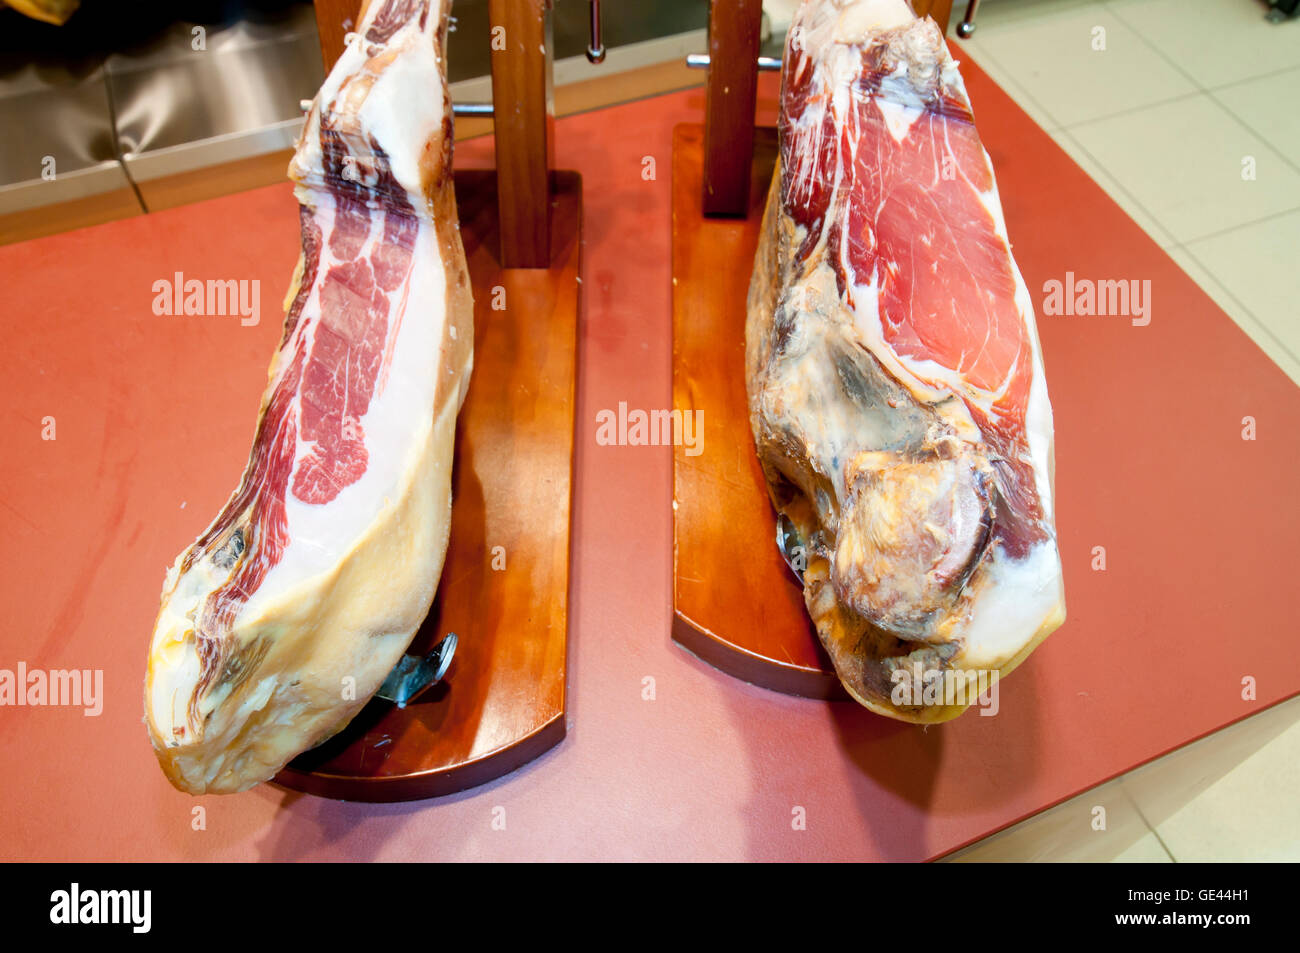 Iberian Ham - Spain Stock Photo